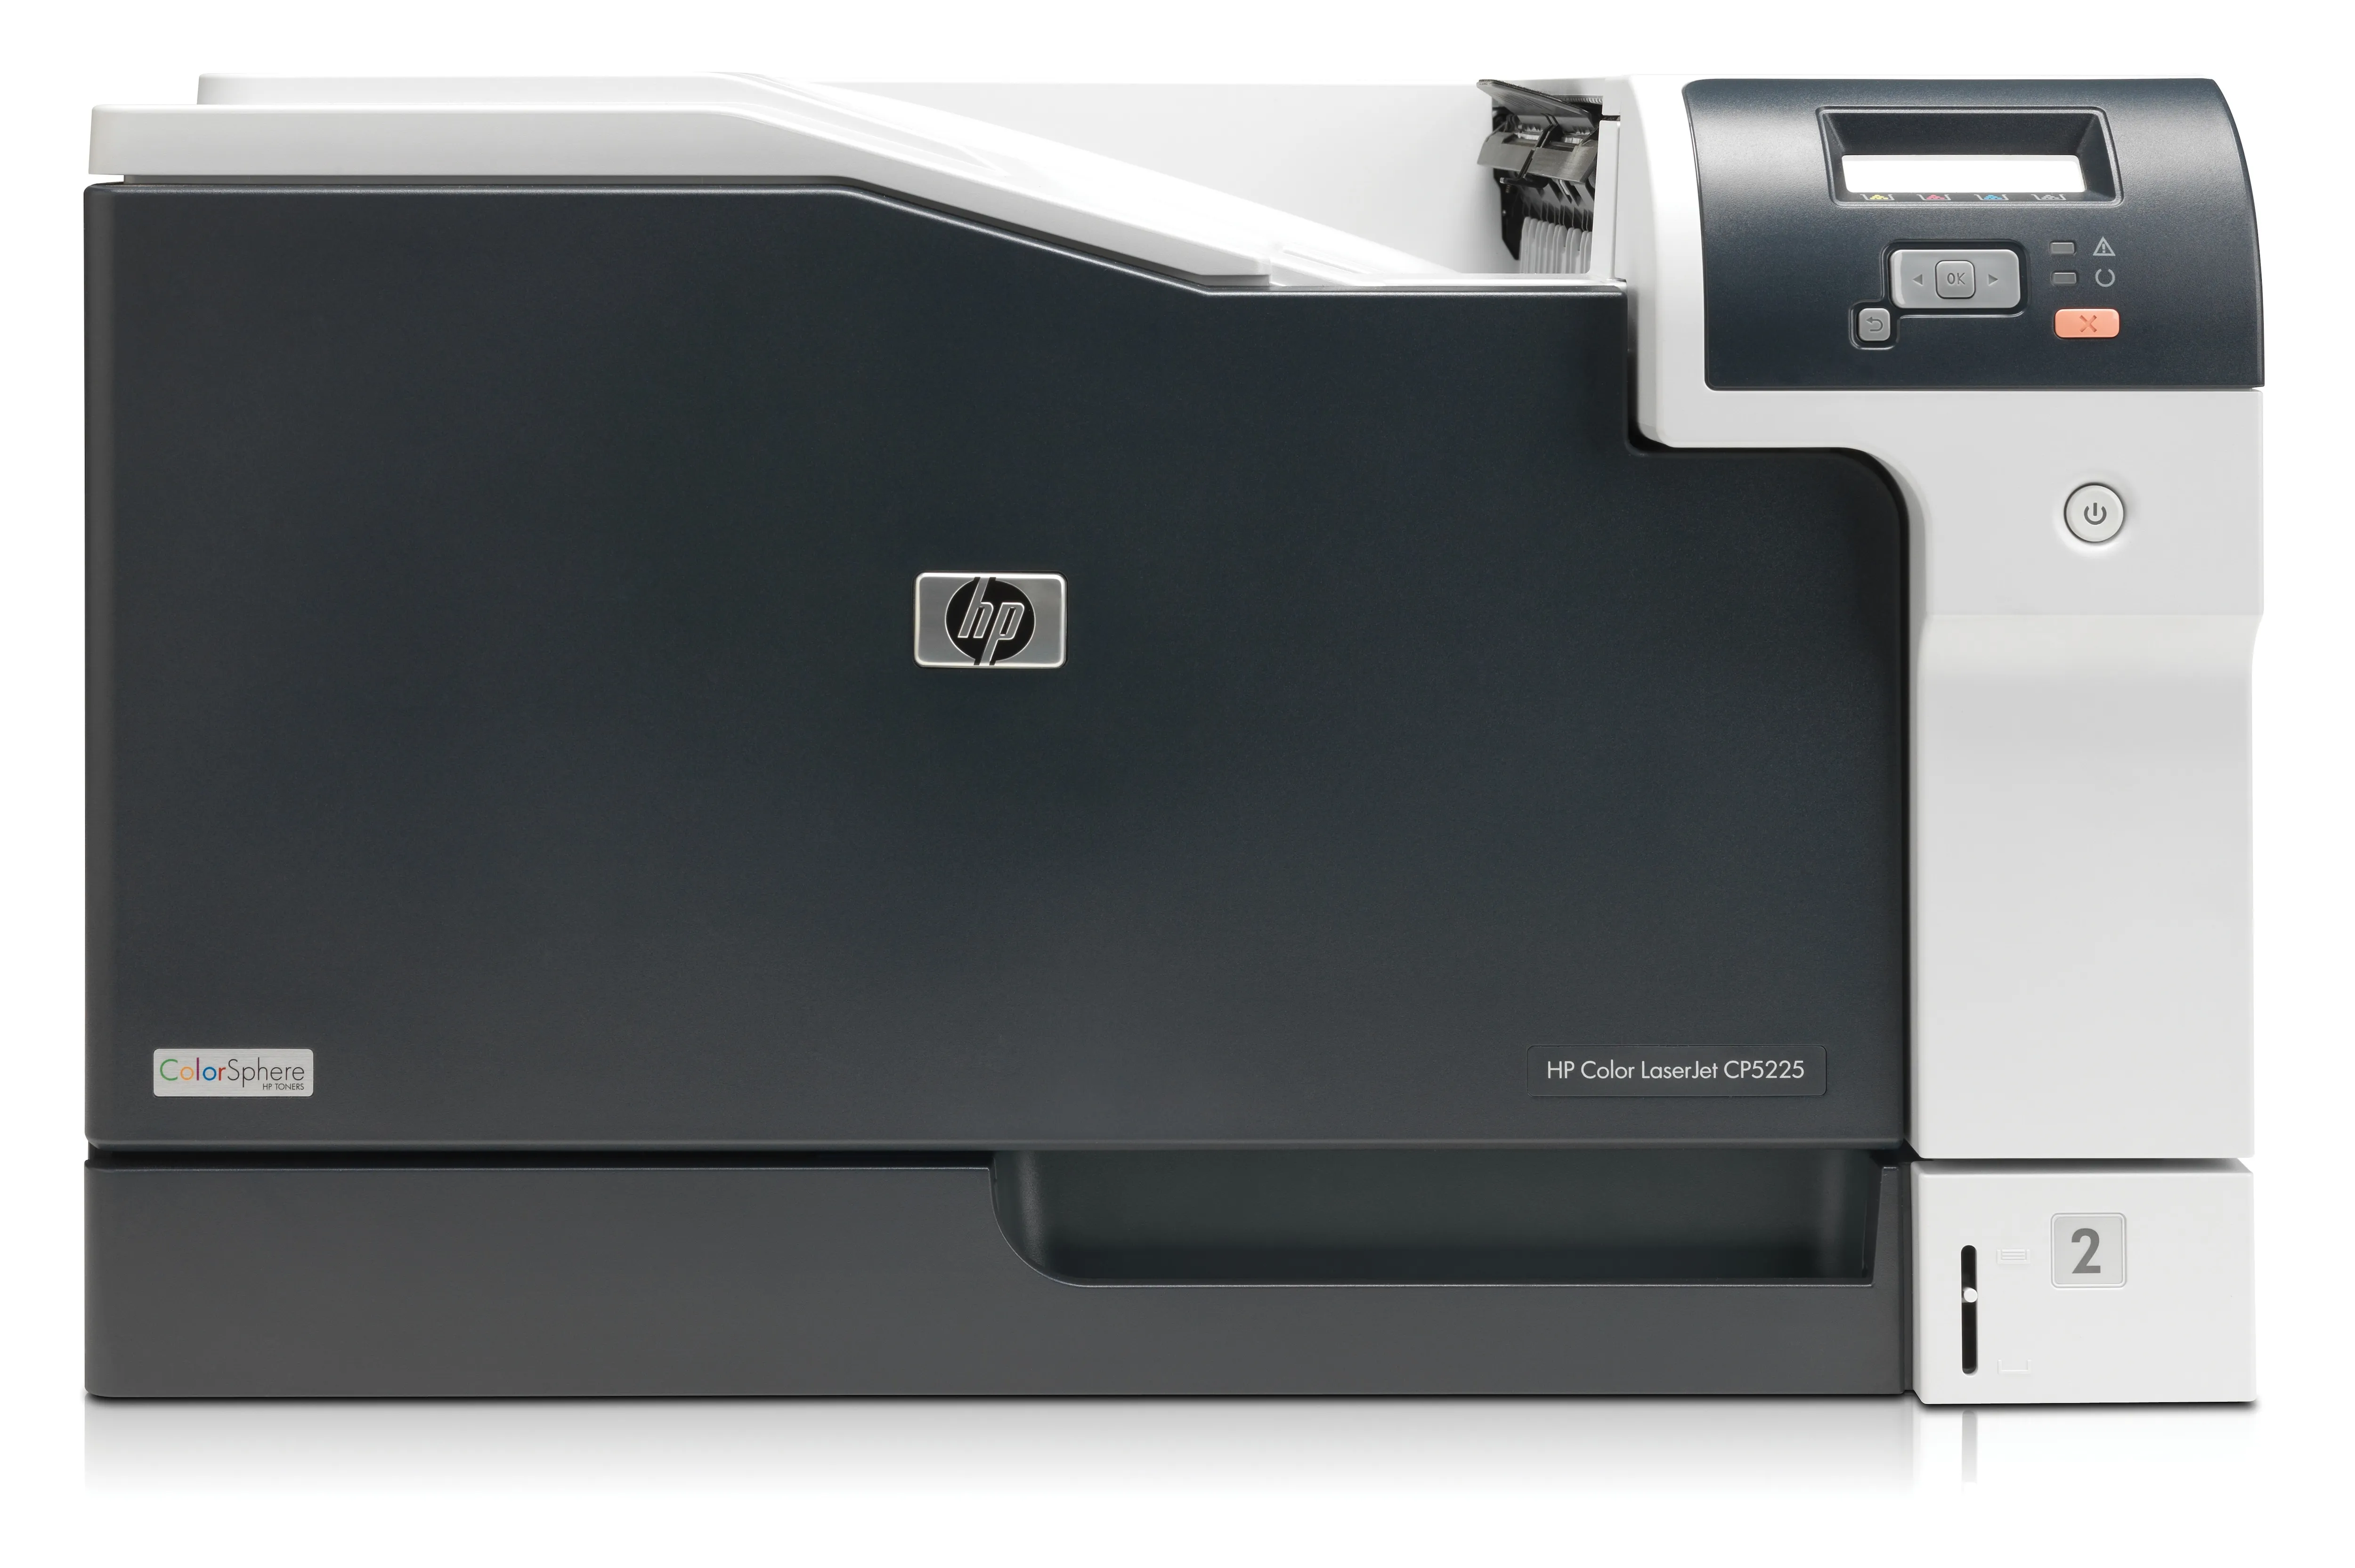 HP Color LaserJet CP5225 HP - visuel 1 - hello RSE - Réalisez rapidement vos tâches quotidiennes